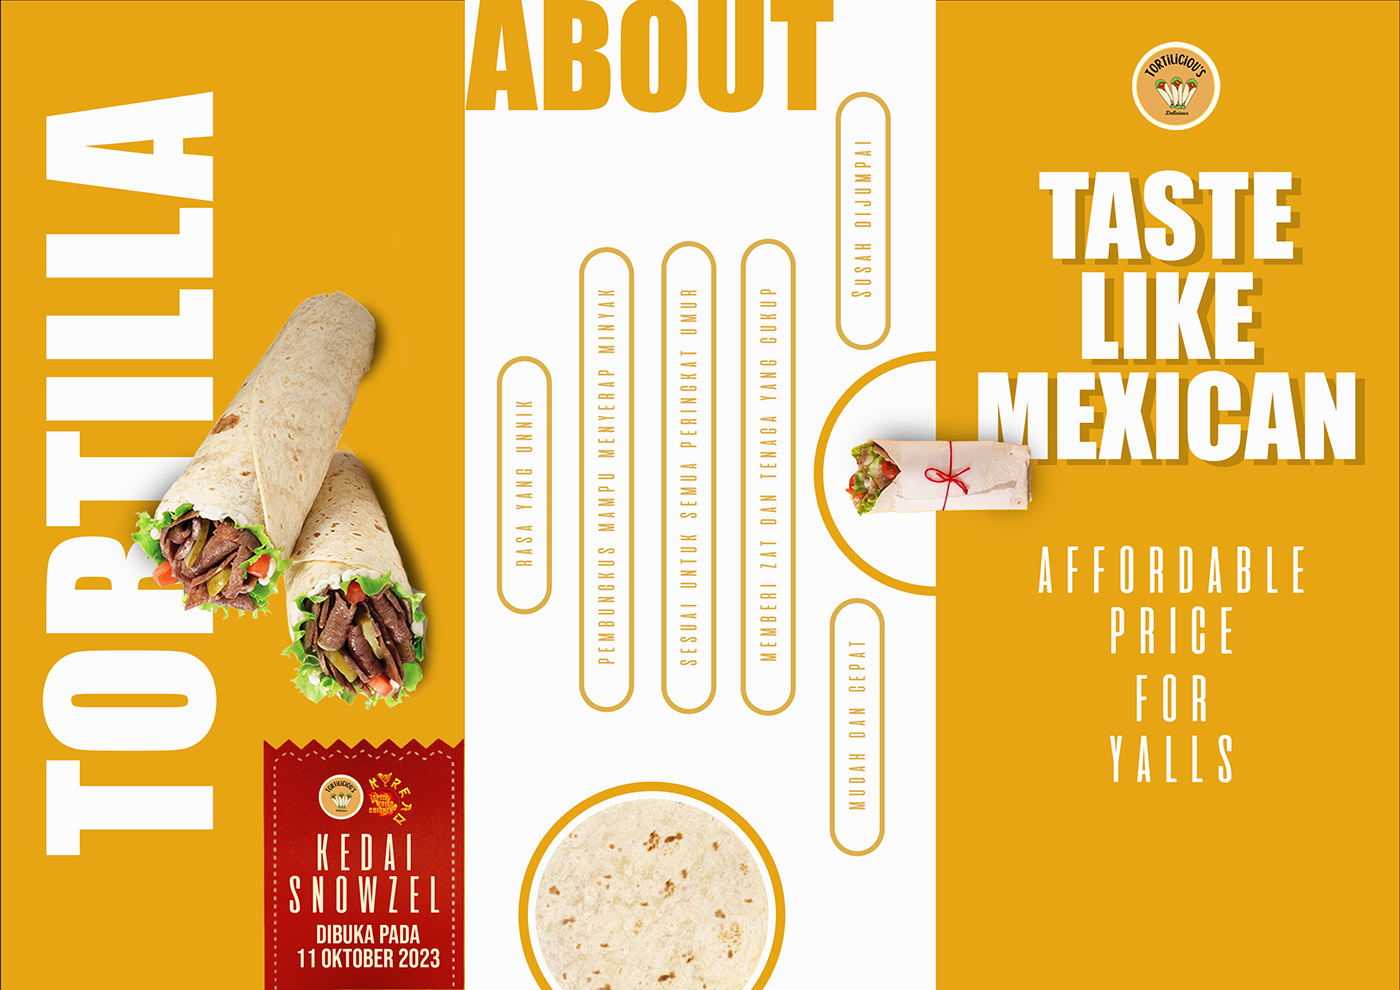 Tortilla tortillaposter tortillaposterdesign poster posterdesign mexicanfood mexicanfoodposter foodposter Social media post marketing  